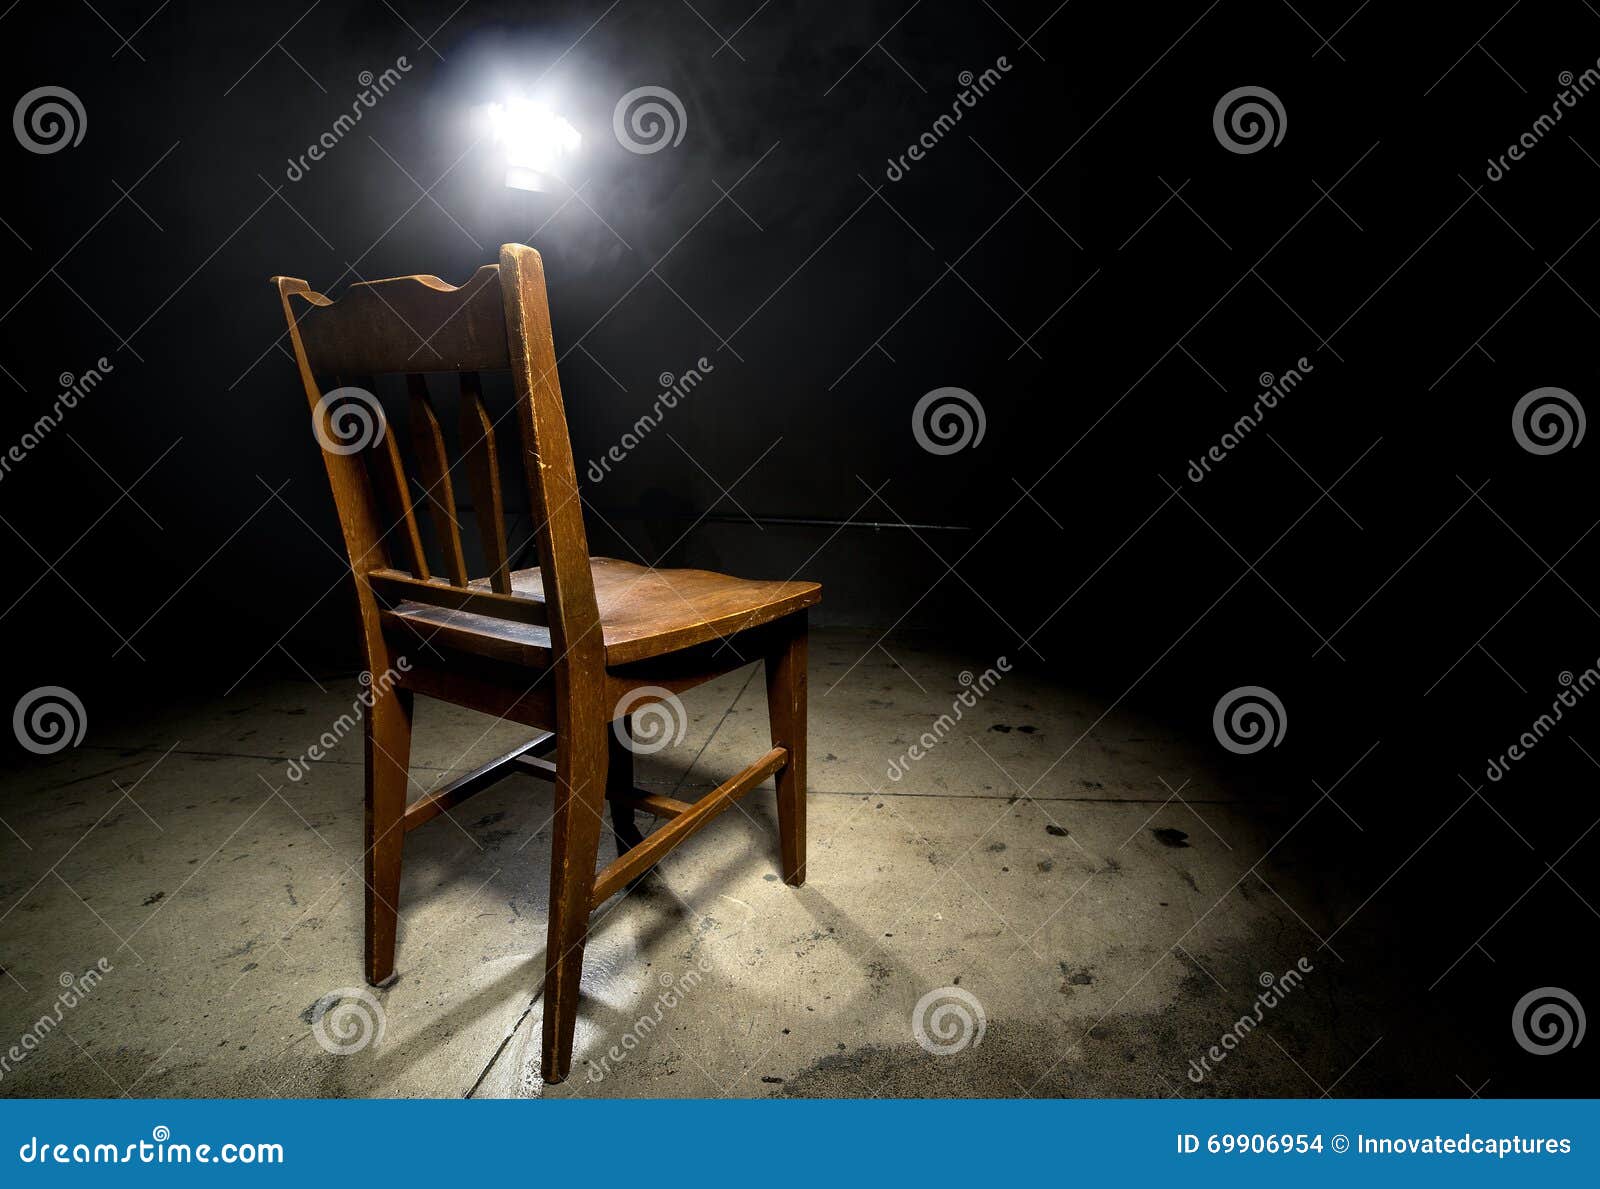 interrogation chair